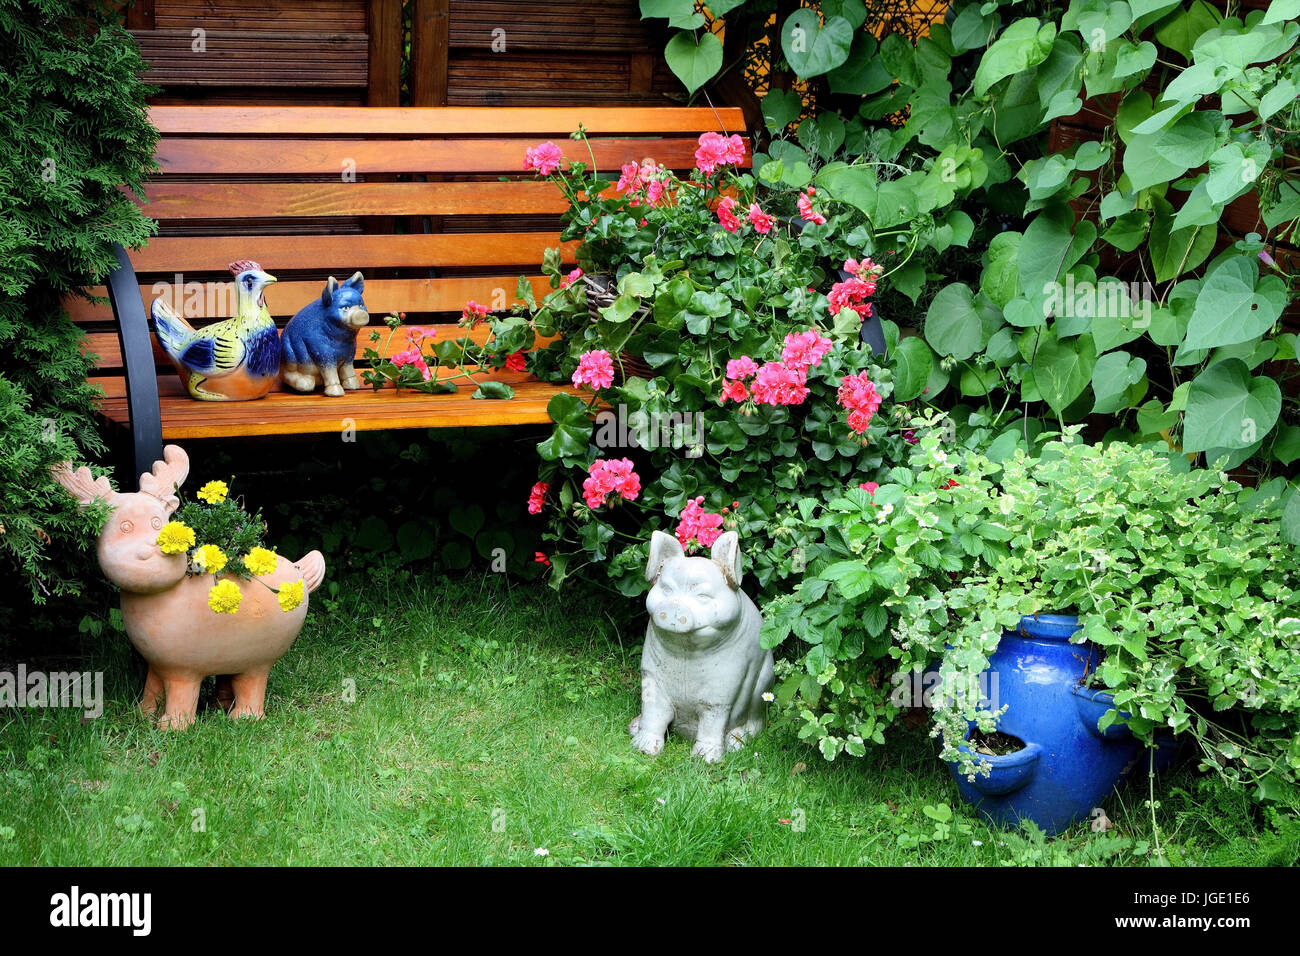 Summer house with flowers and tendrils covered, Gartenhaus mit Blumen und Ranken bewachsen Stock Photo